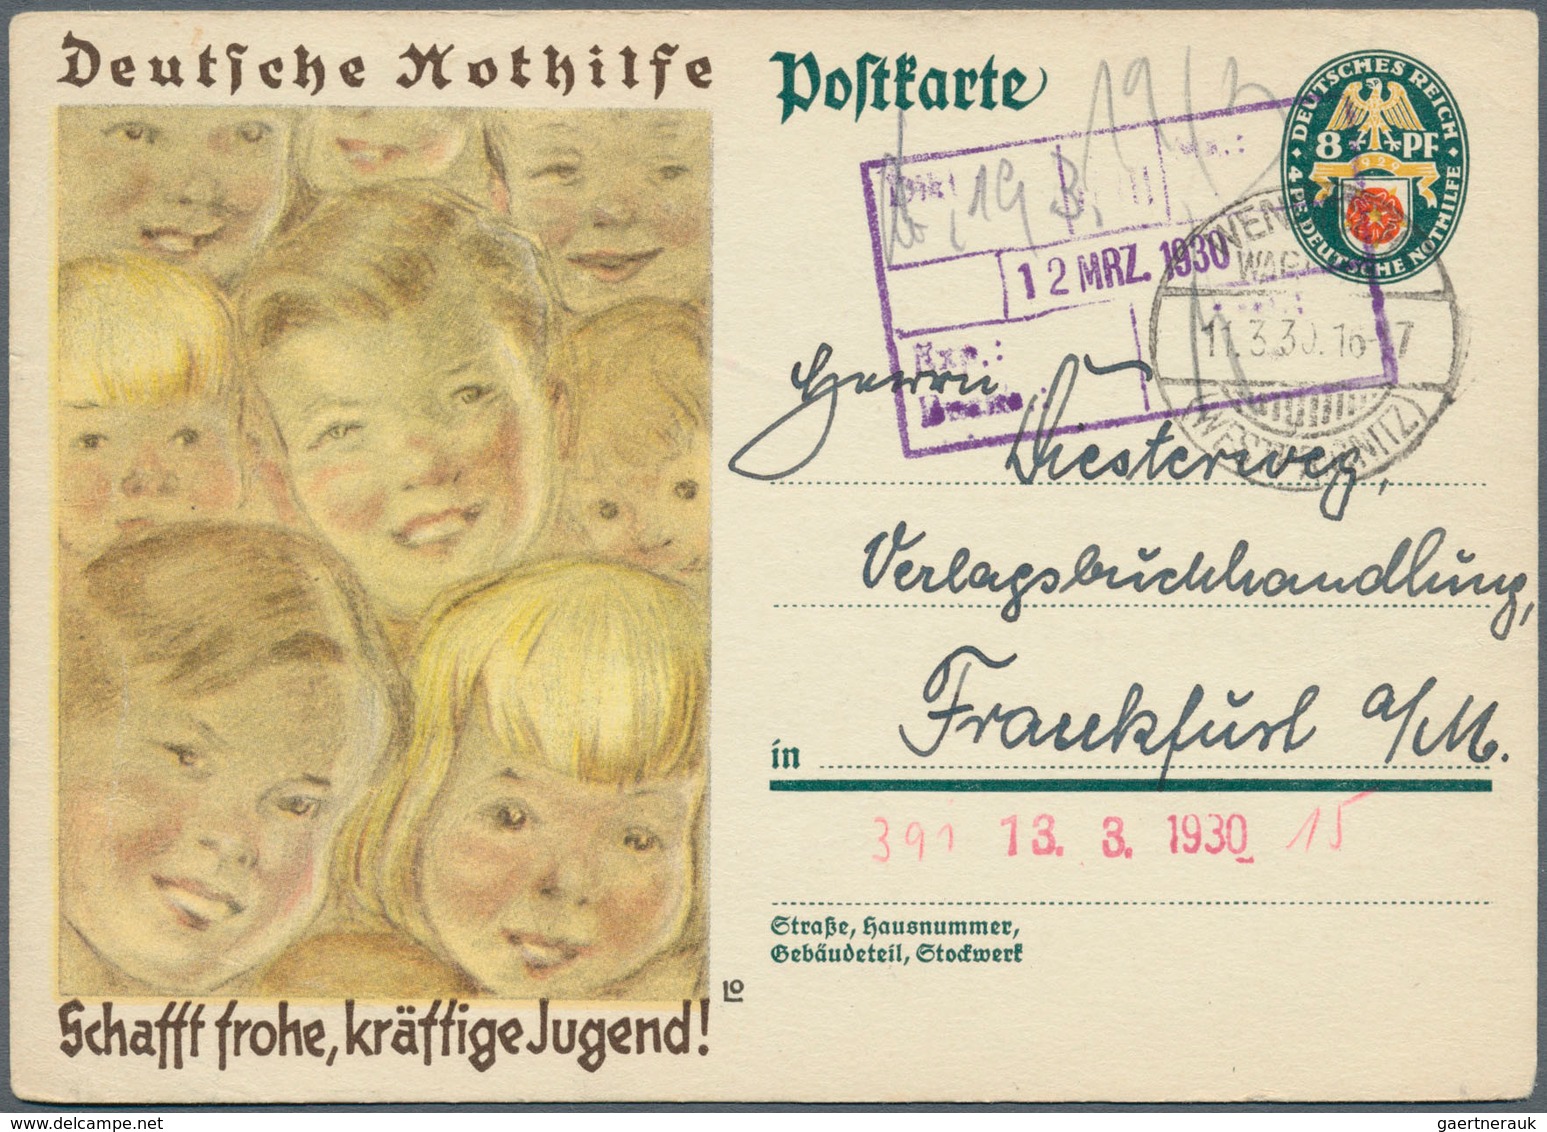 Deutschland: 1880/1985, riesiger Posten von Briefen und Ganzsachen subsummiert unter dem Stichwort "